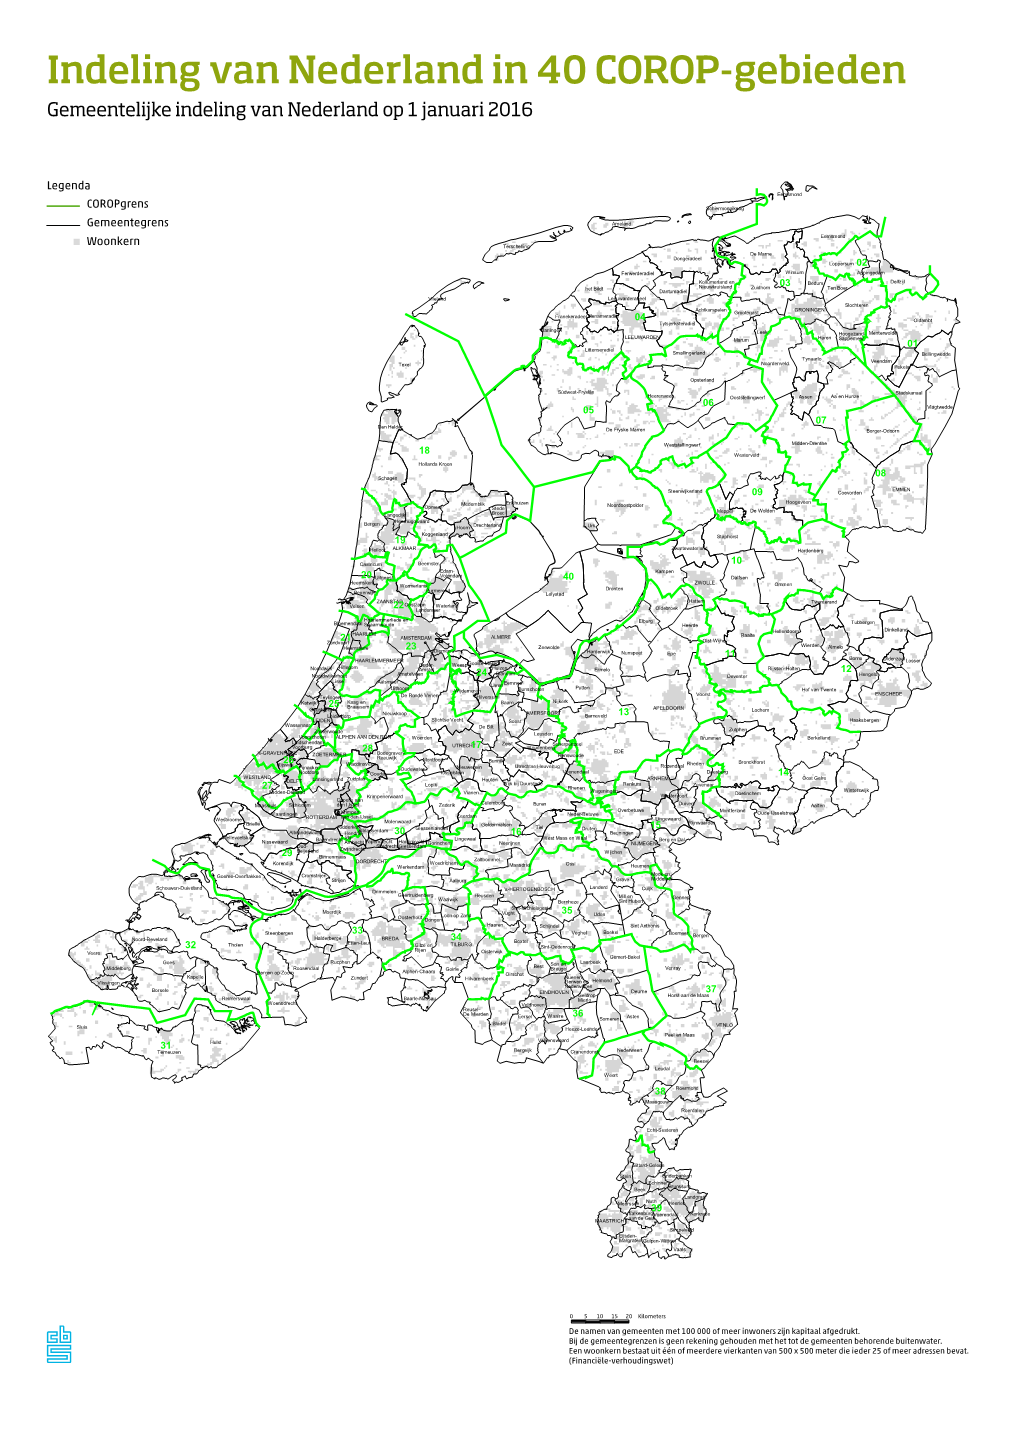 Indeling Van Nederland in 40 COROP-Gebieden Gemeentelijke Indeling Van Nederland Op 1 Januari 2016